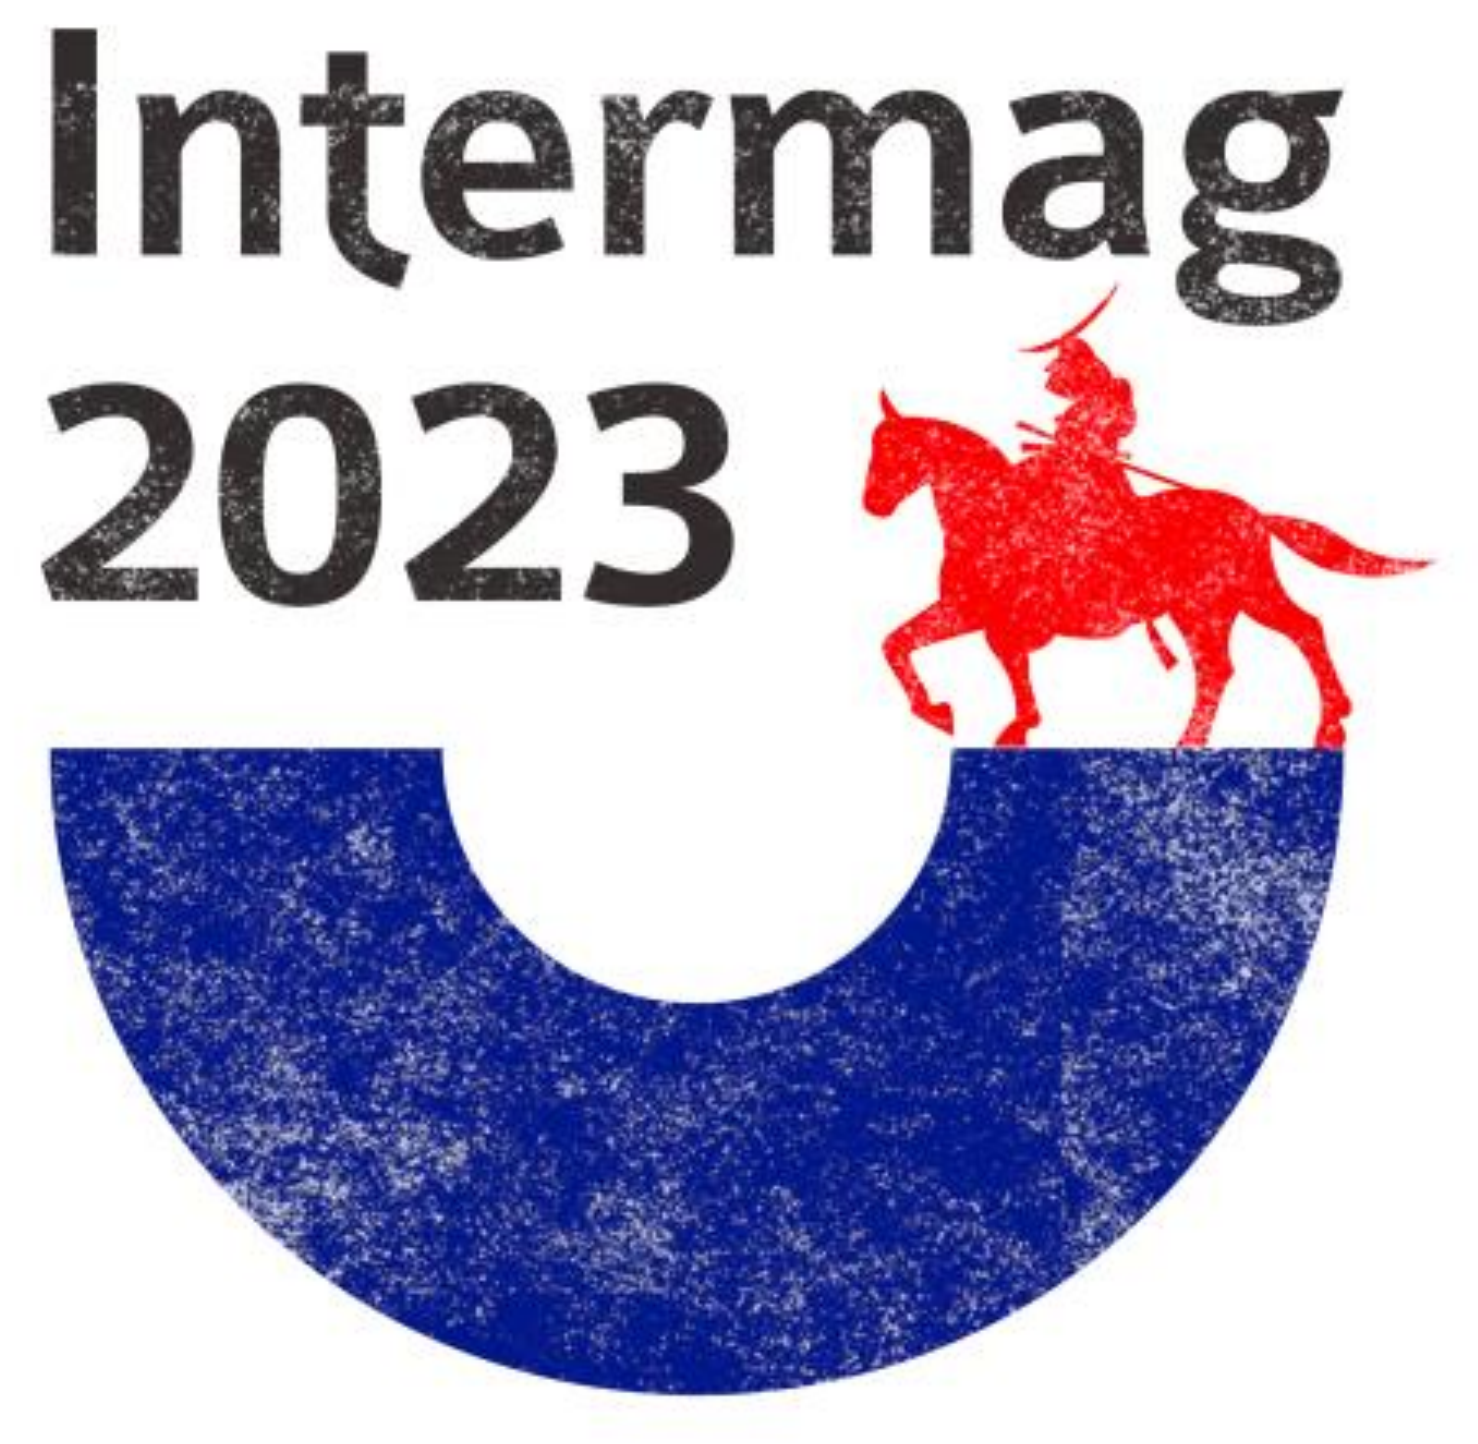 Runner-up Intermag 2023 logo